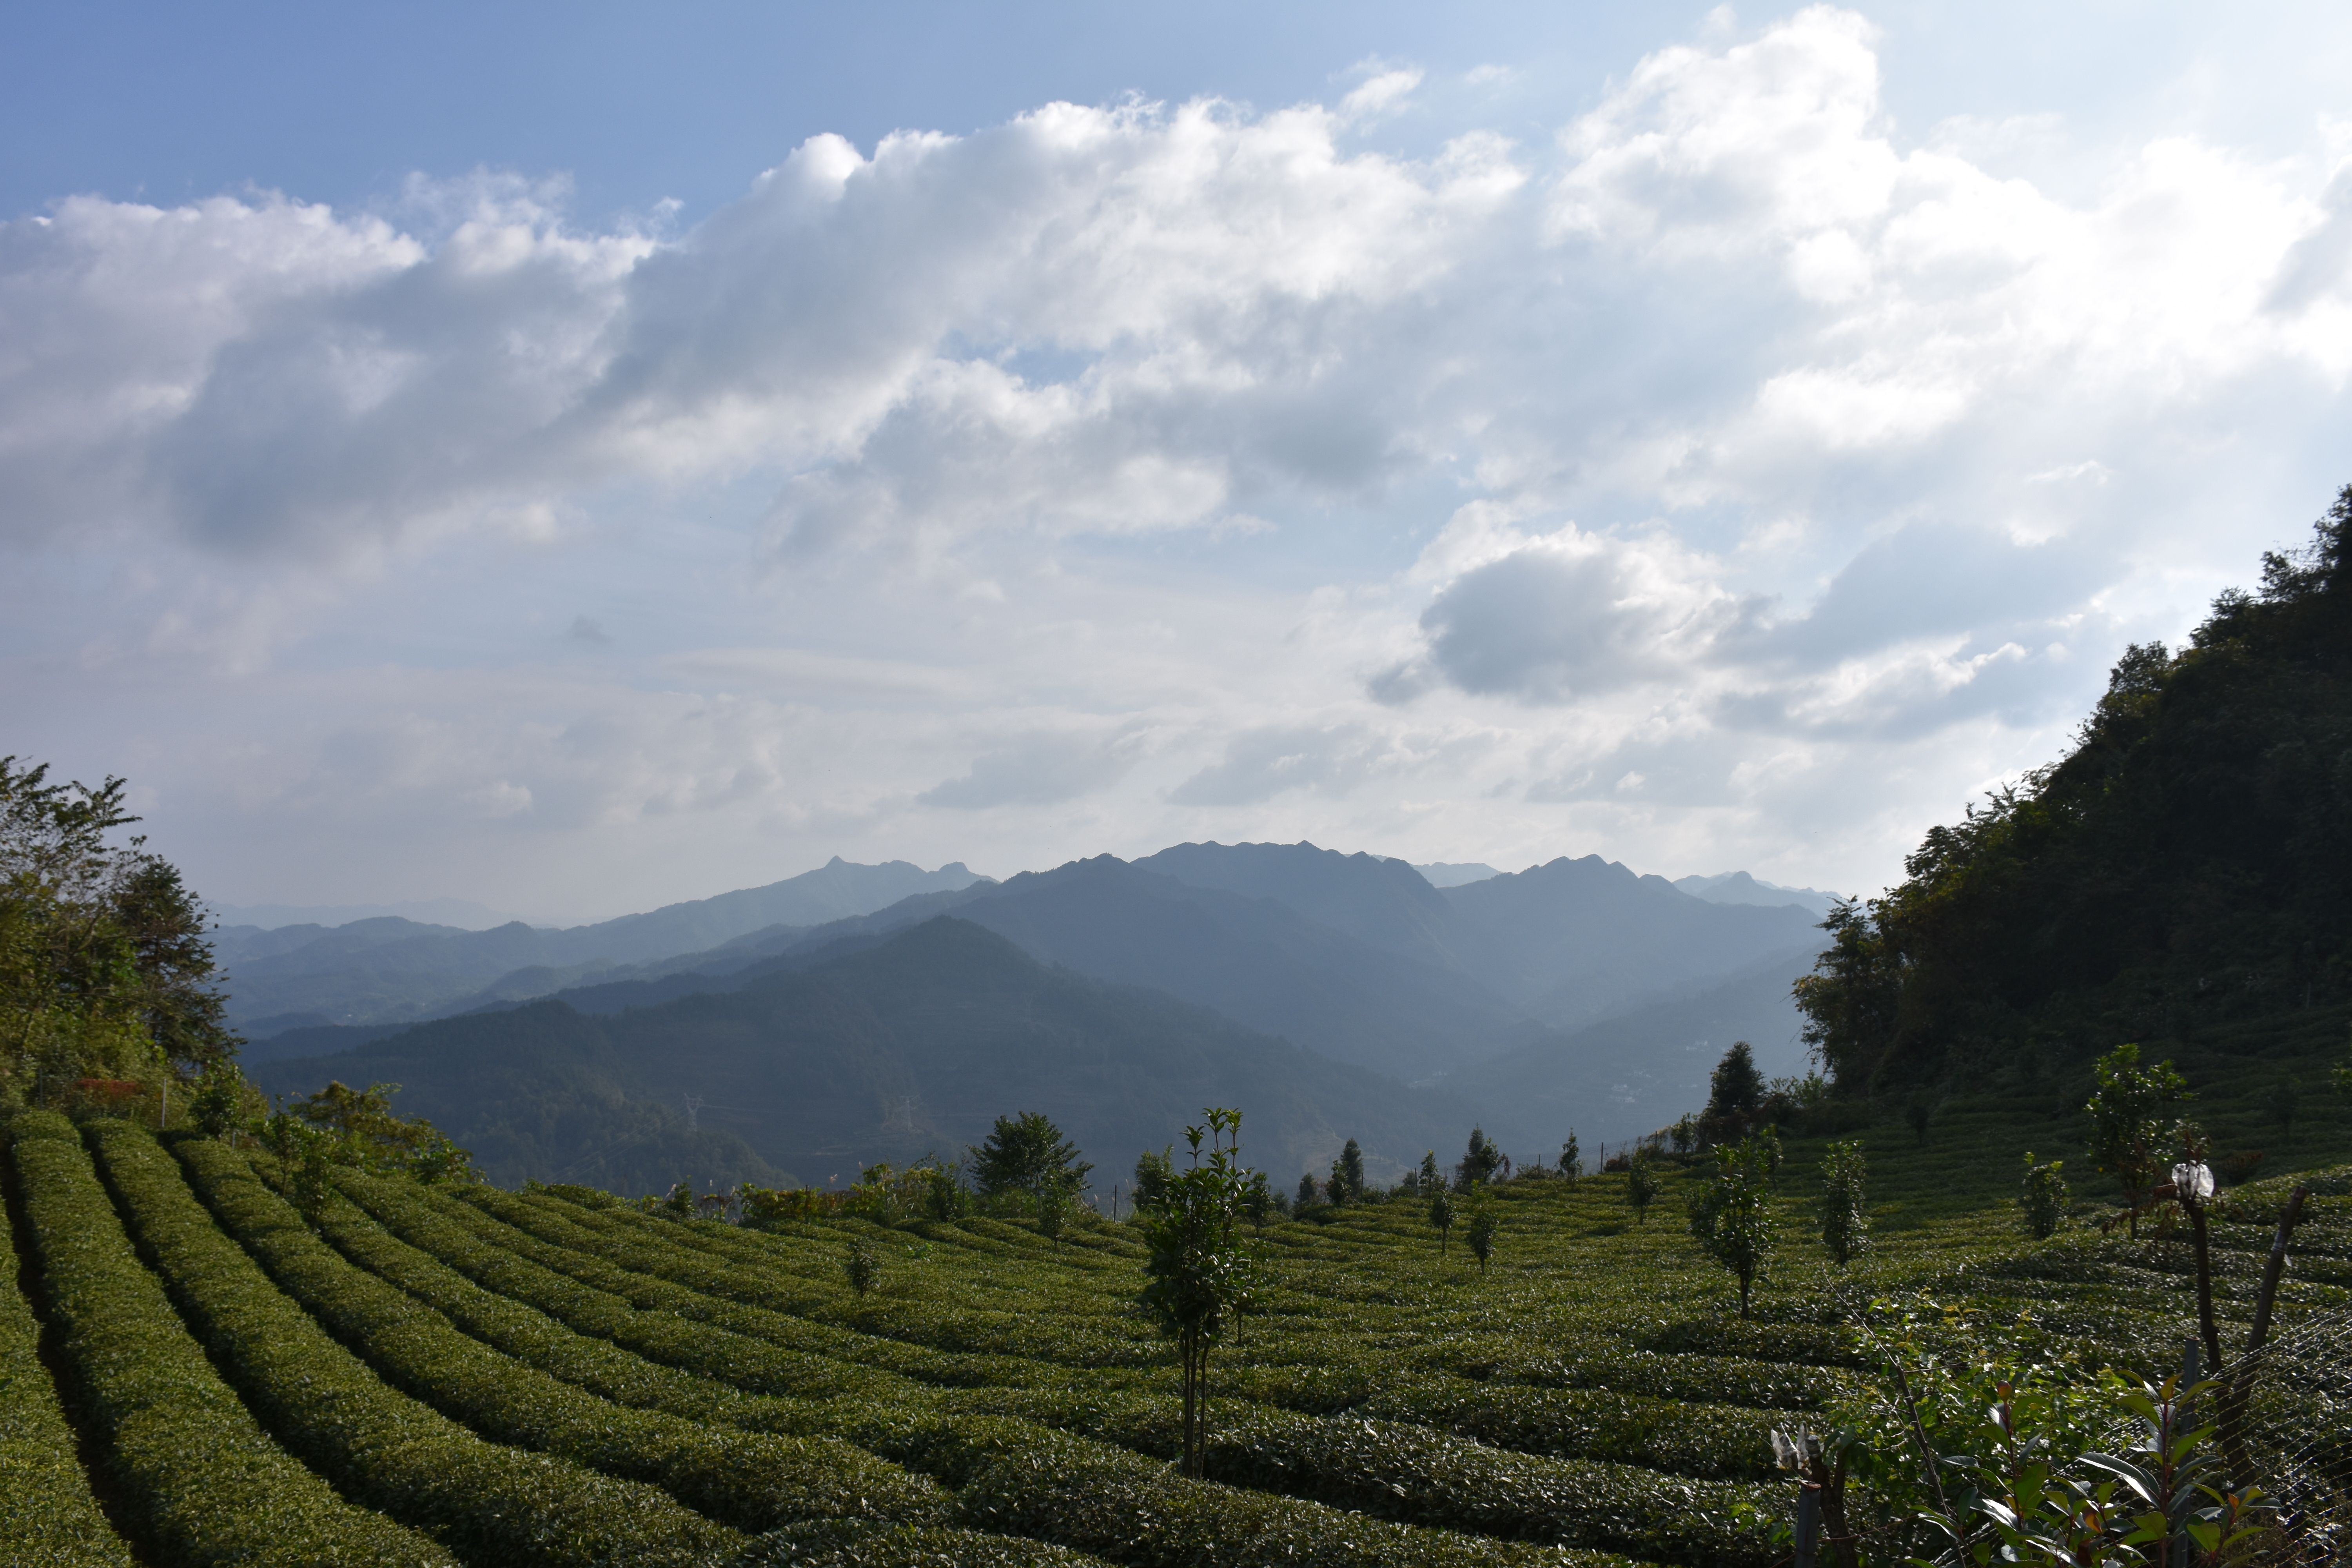 Tea fields in Meitan village, Guizhou province, China. Photo by Alexander Day, 2018